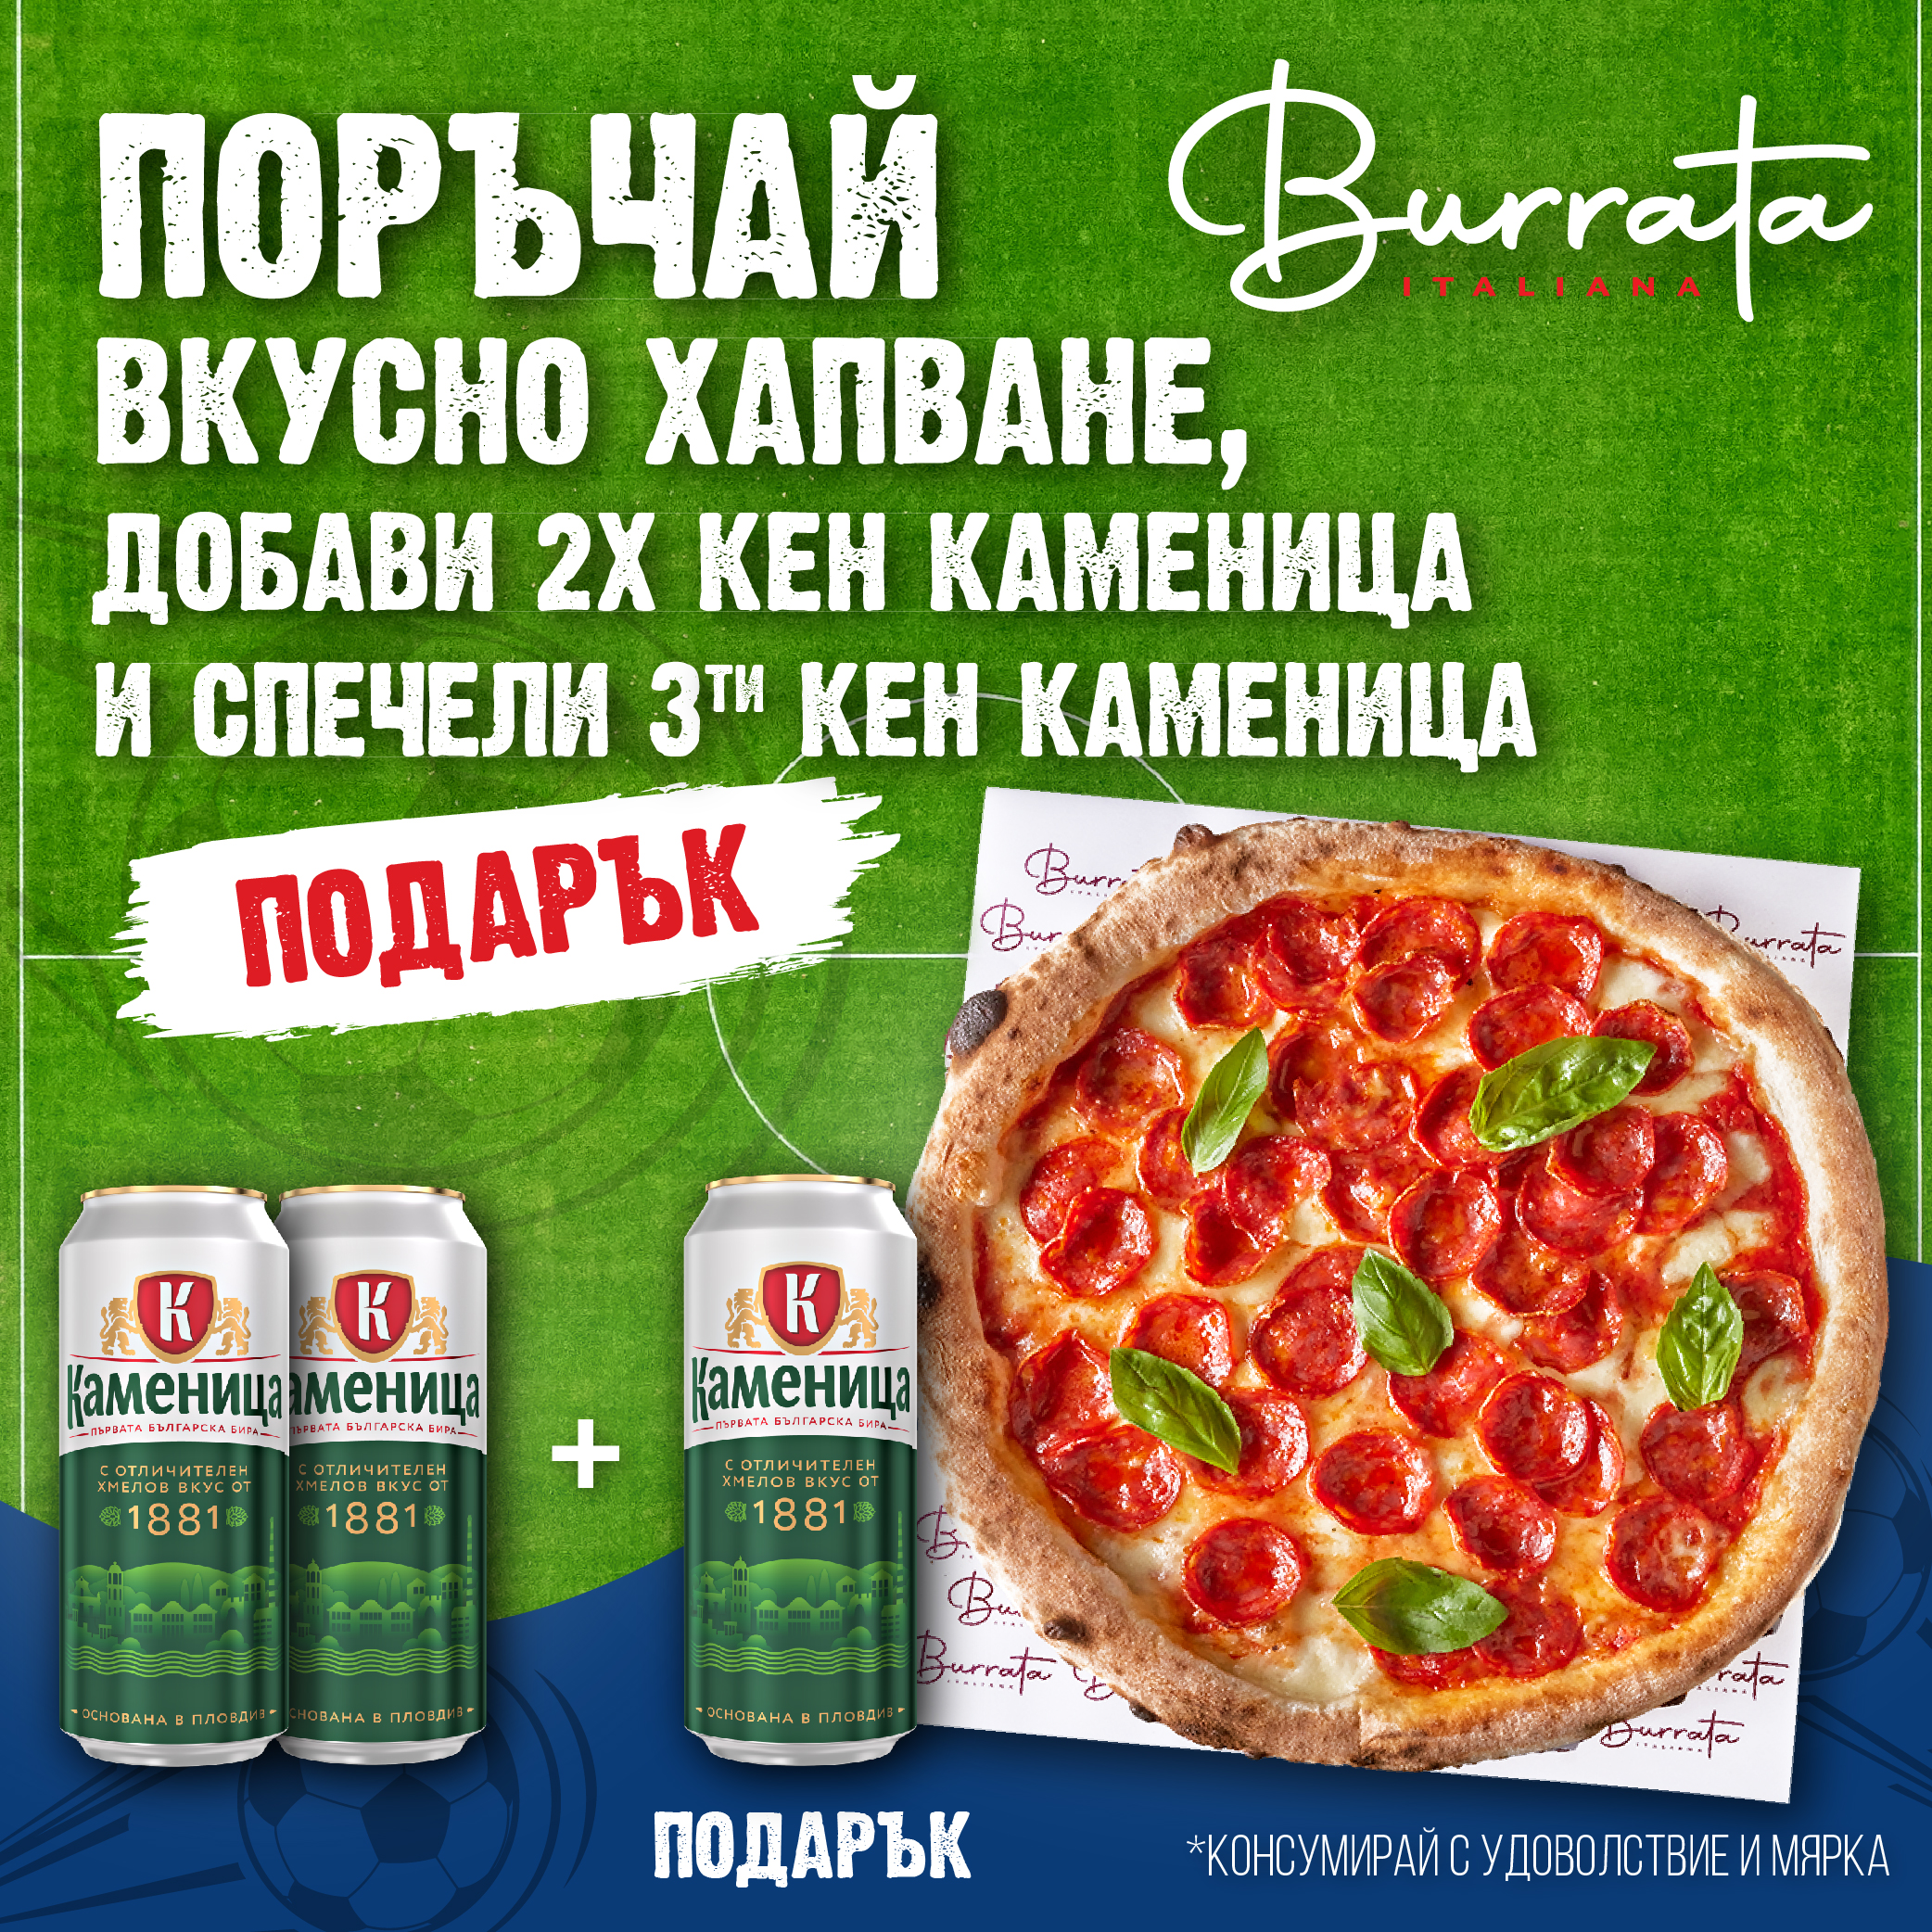 Burrata & Kamenitza promo 2+1 Подарък бира кен